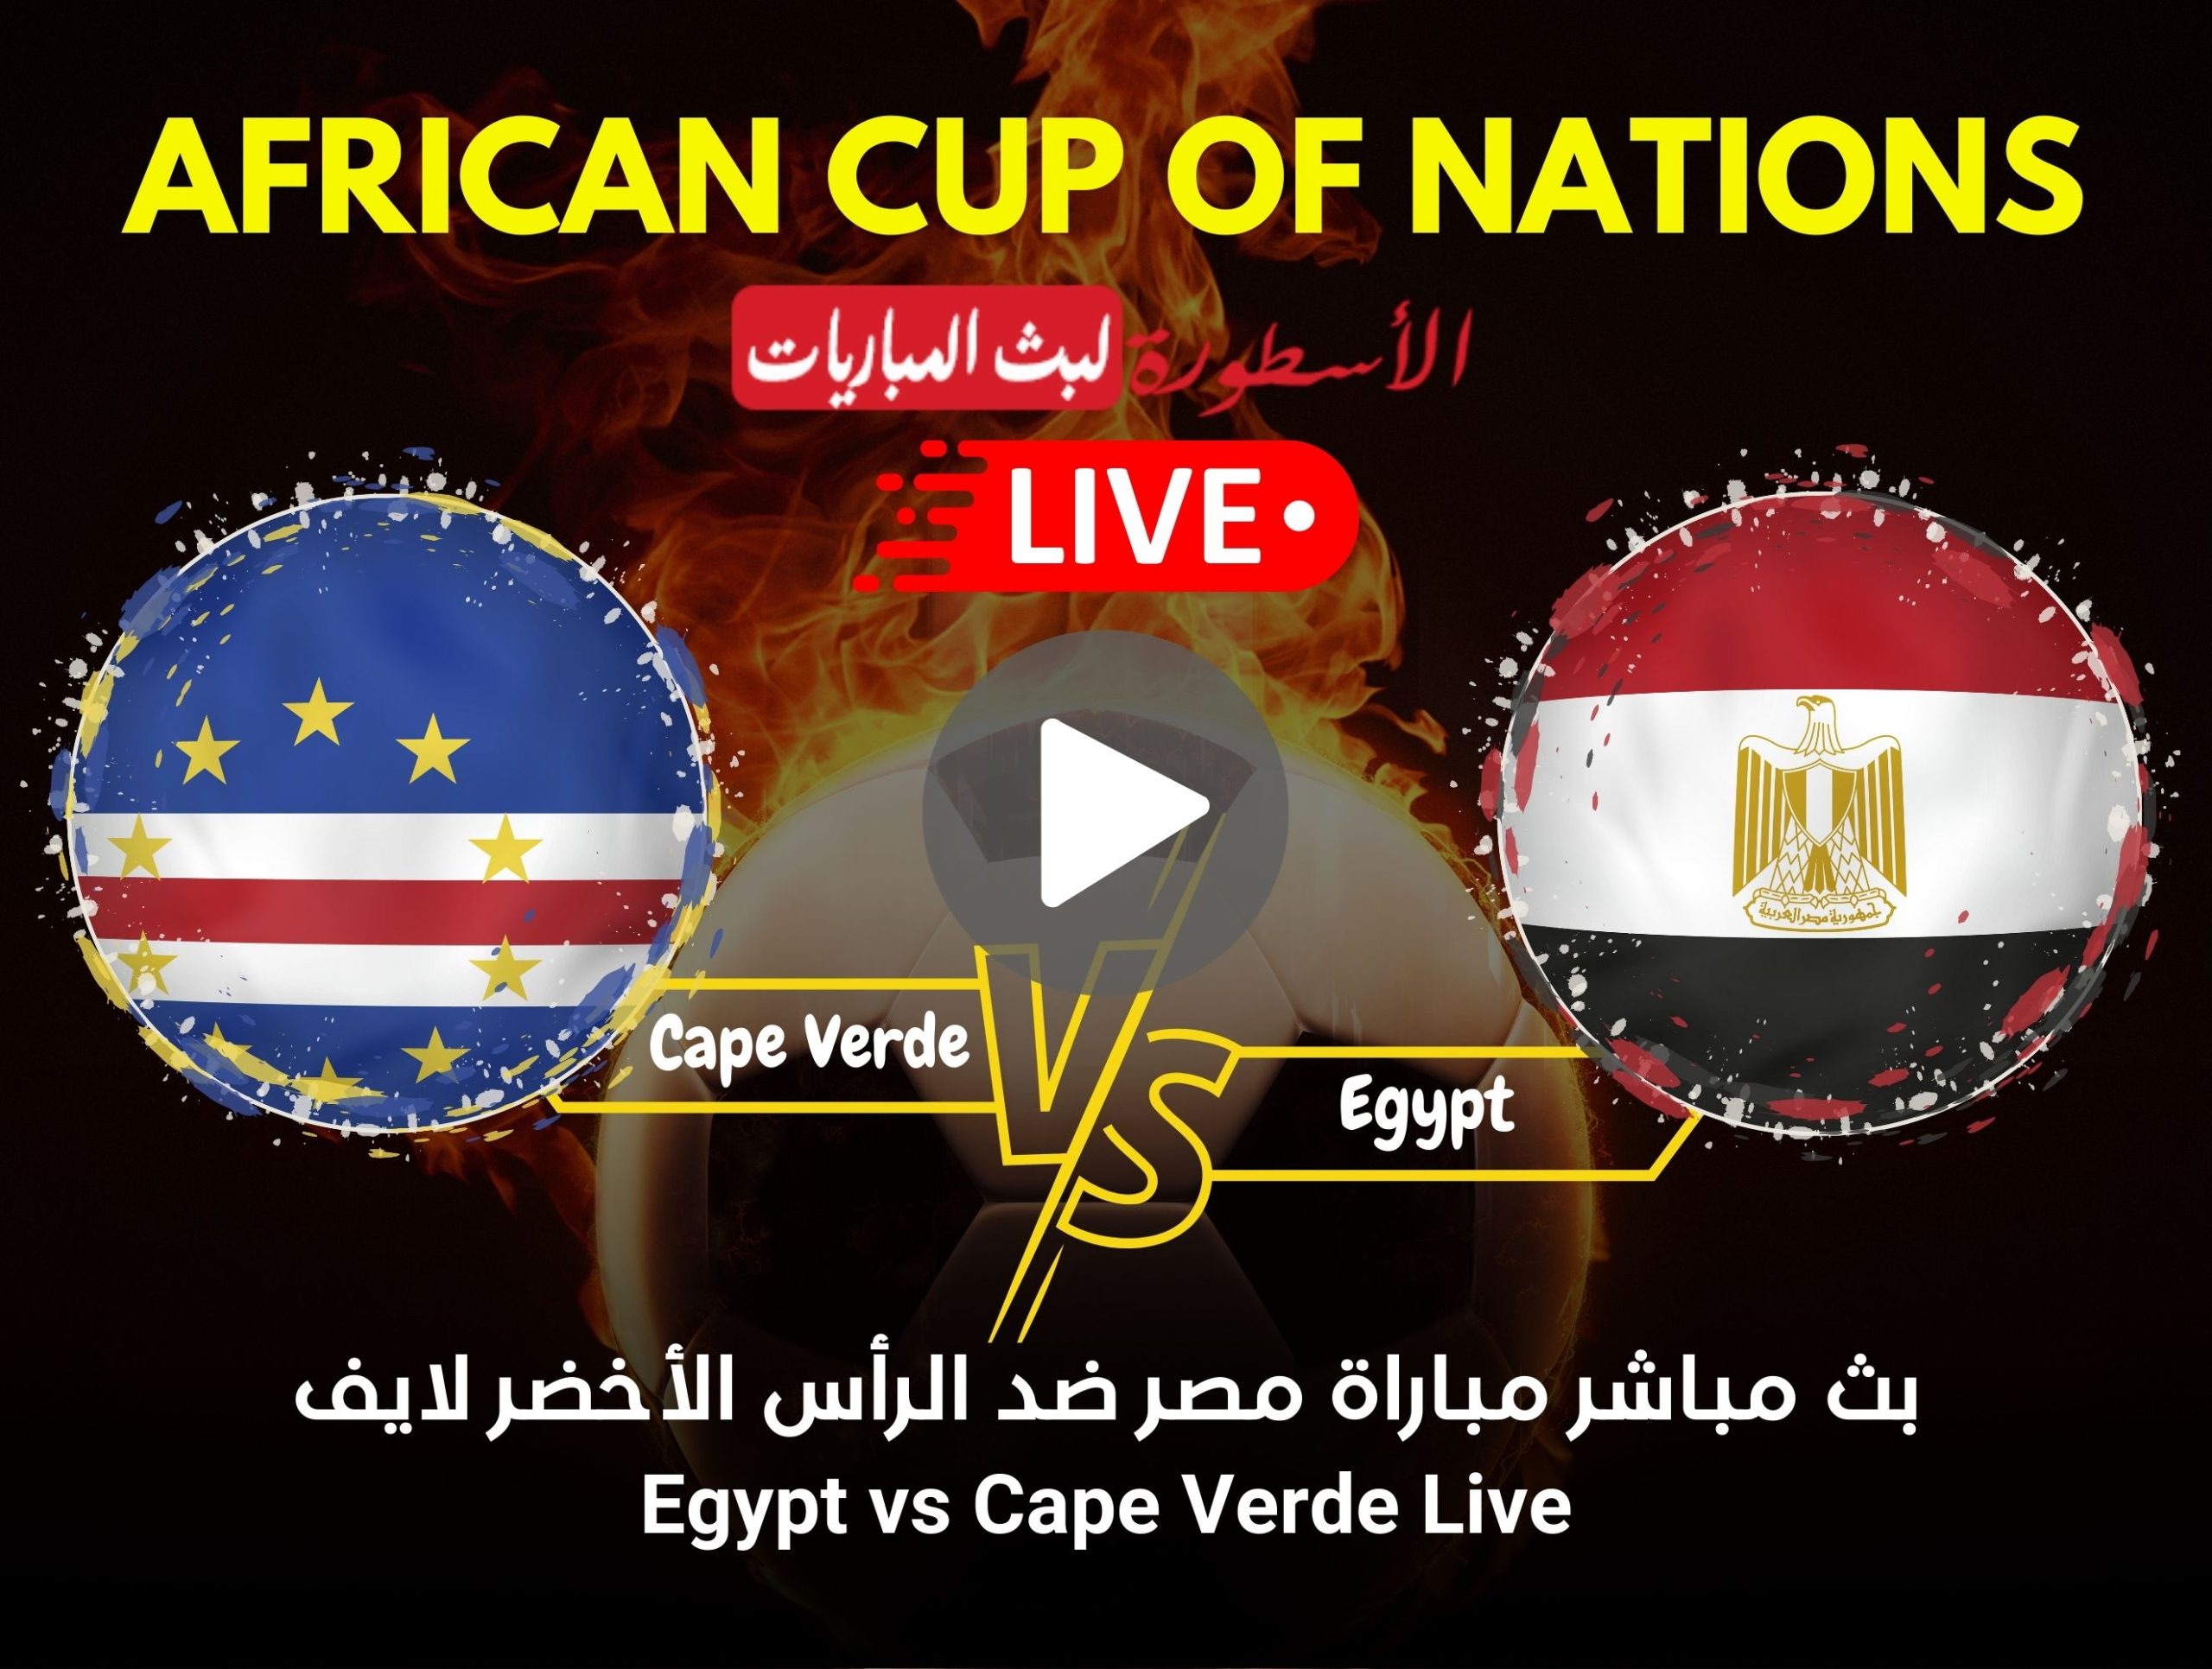 مباراة مصر والرأس الأخضر بث مباشر beIN Sports HD 1 Max كأس أمم أفريقيا لايف الآن